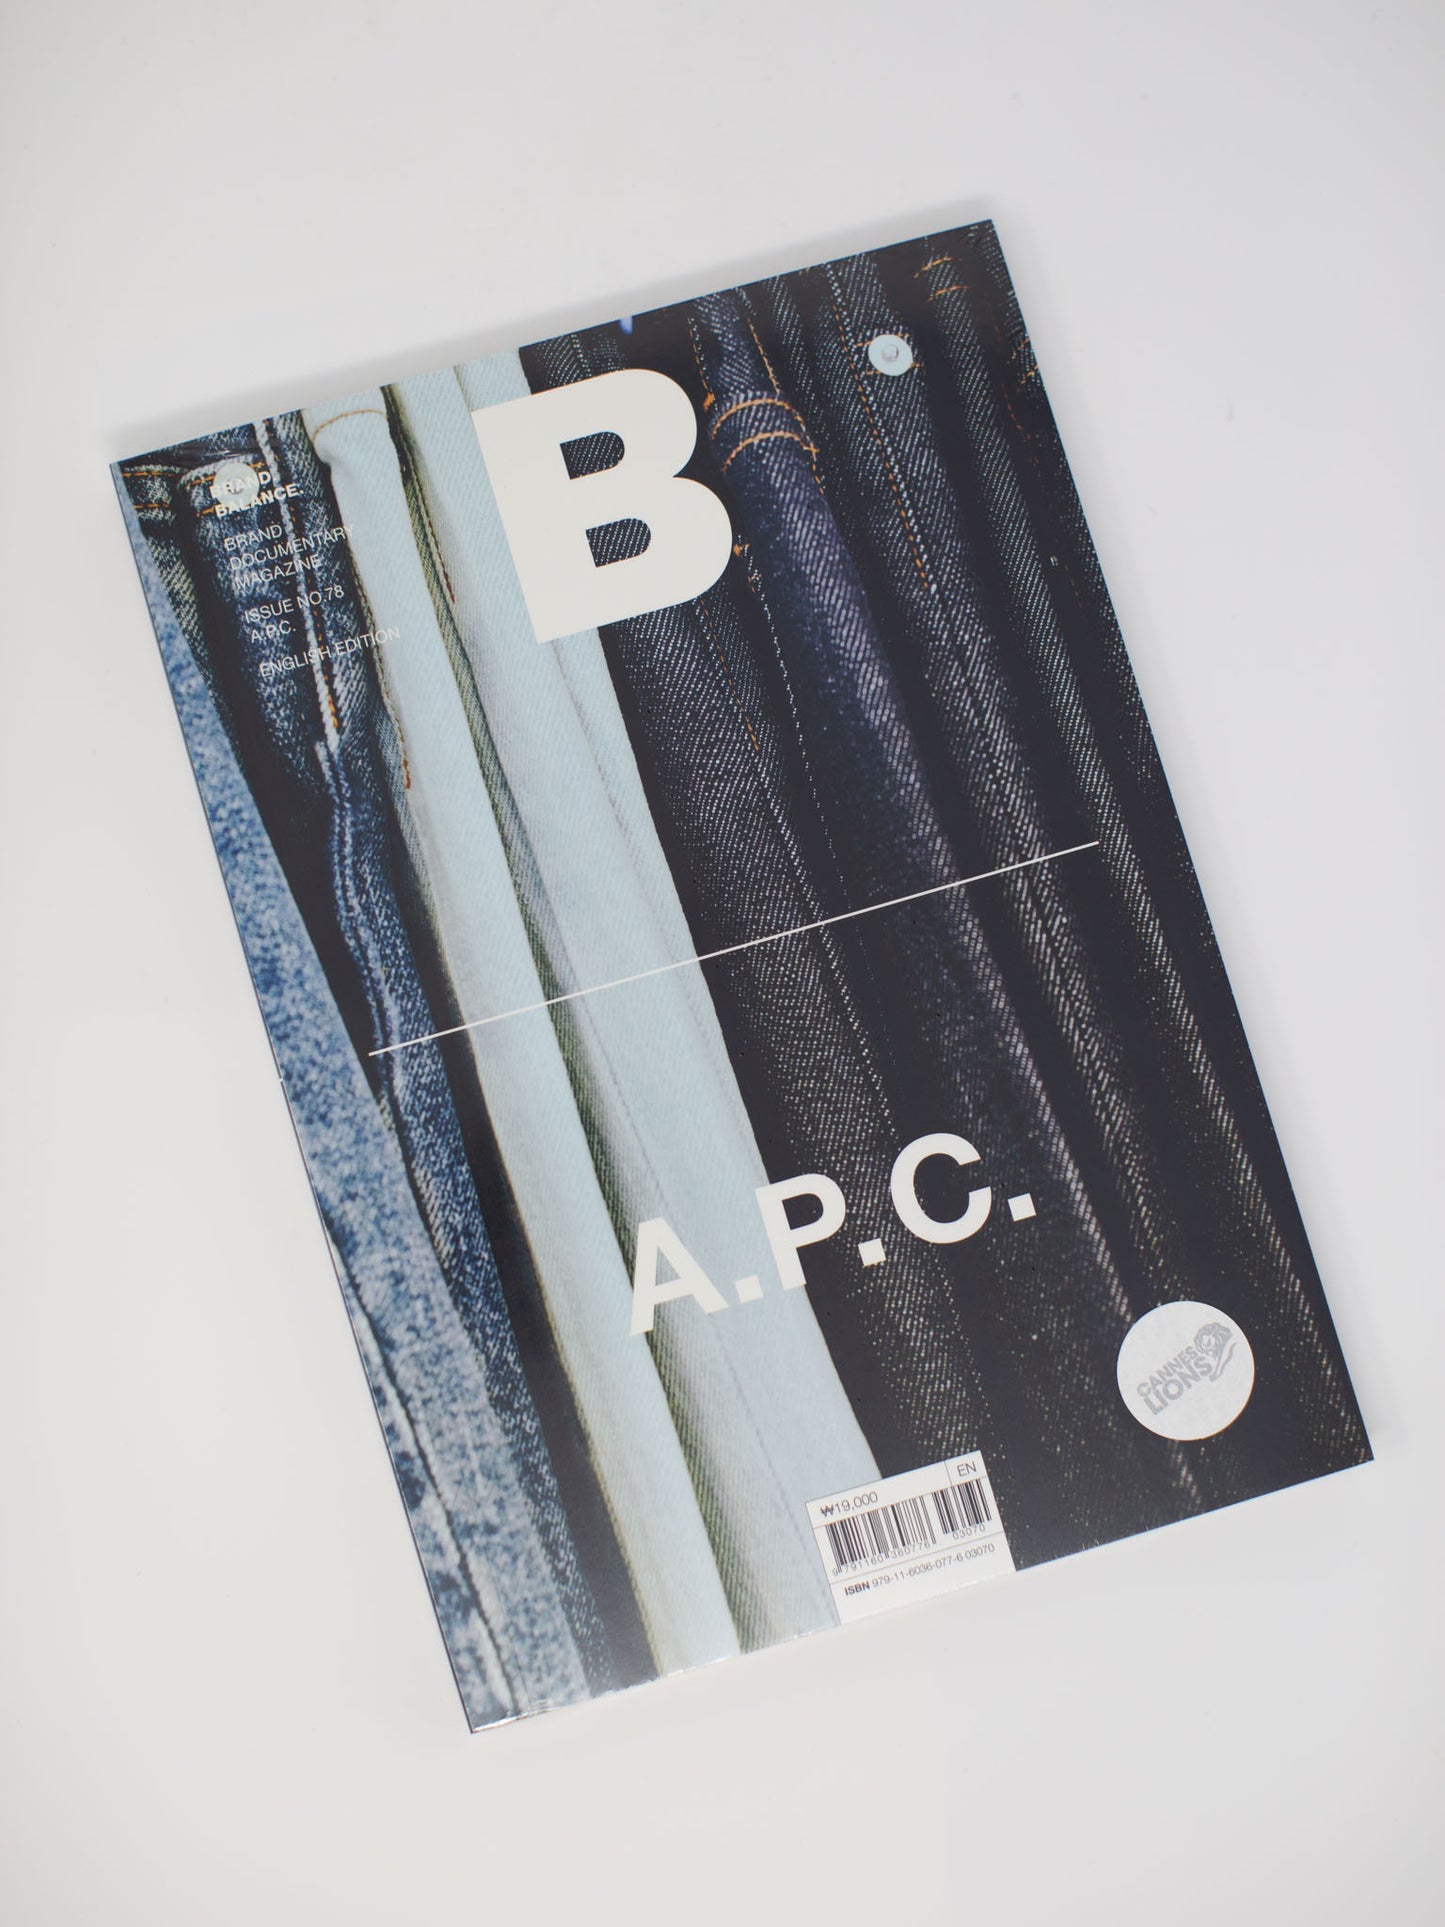 Magazine B - A.P.C.